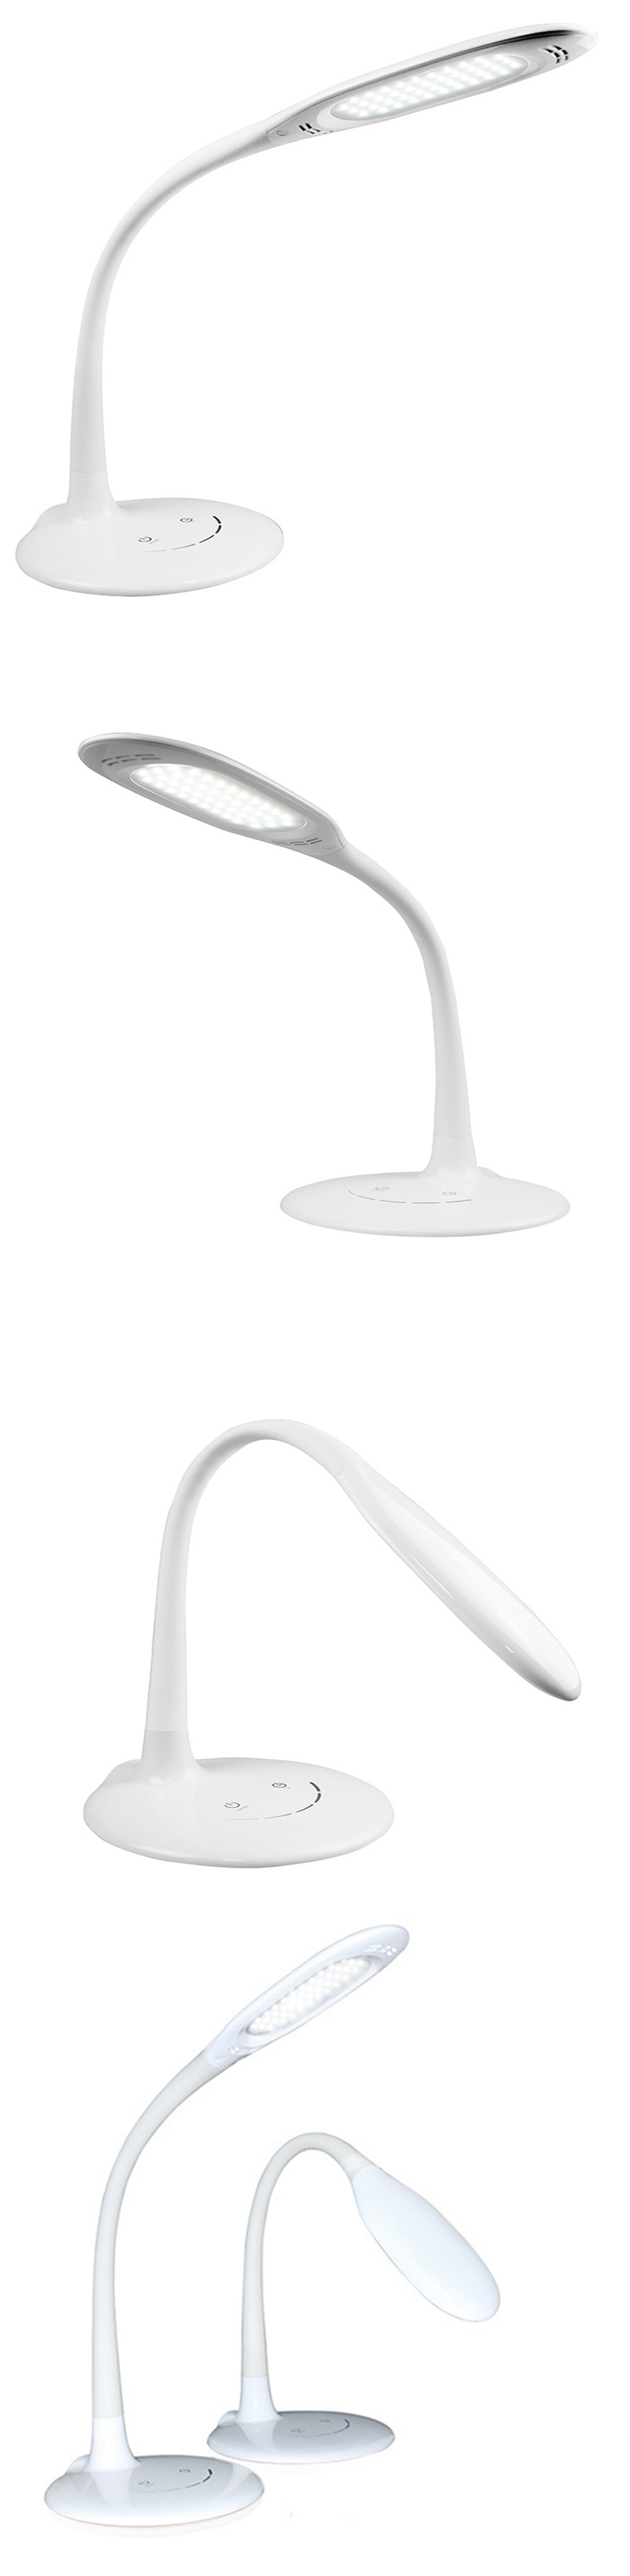 LED Desk Lamp LED Table Lighting Touch LED Rechargeable Portable Reading LED Table Lamp LED Light